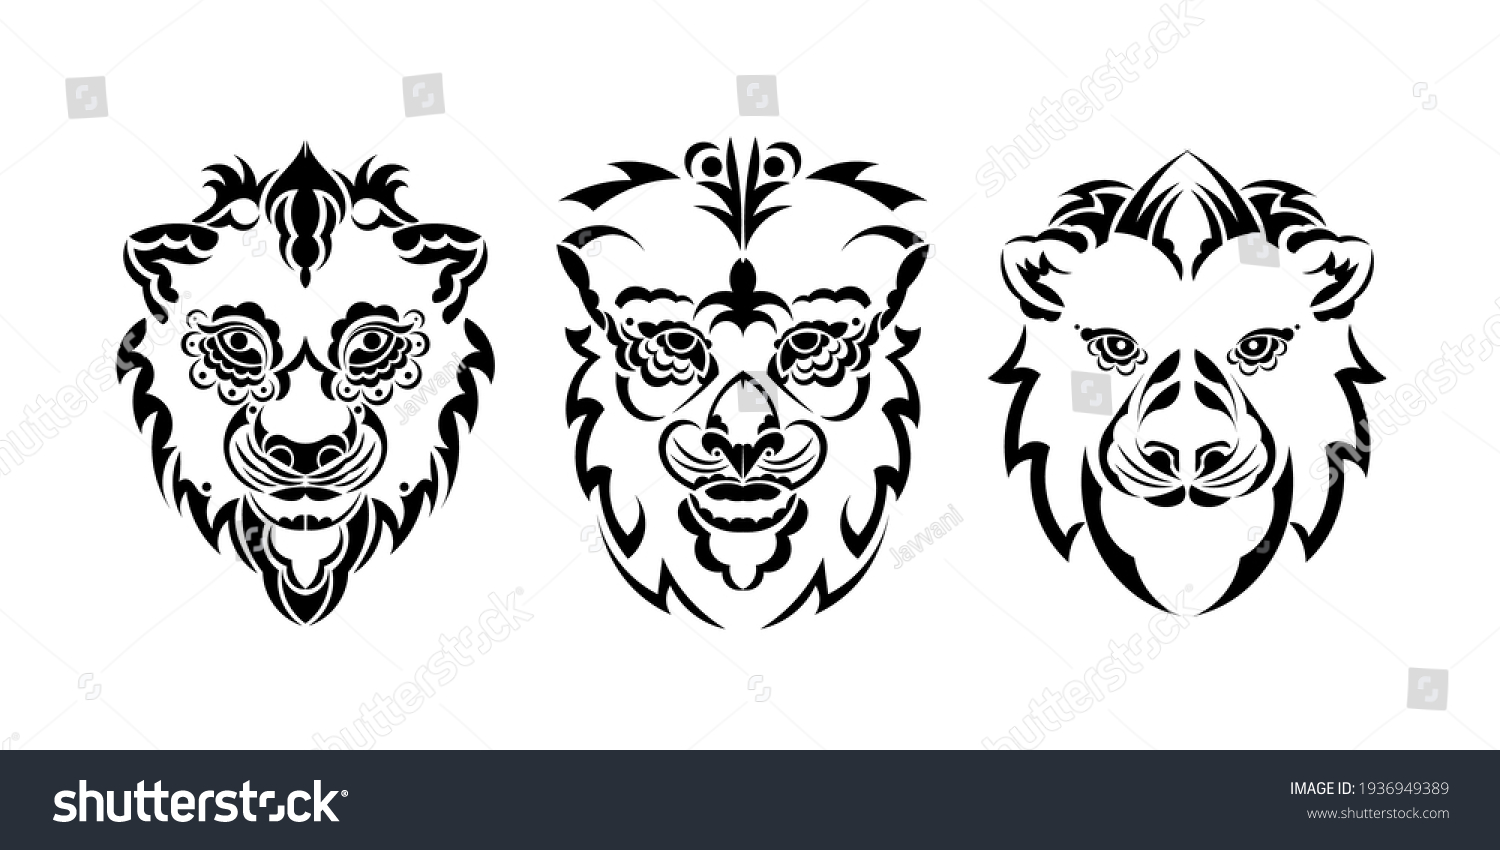 3. Lioness Portrait Tattoos - wide 7